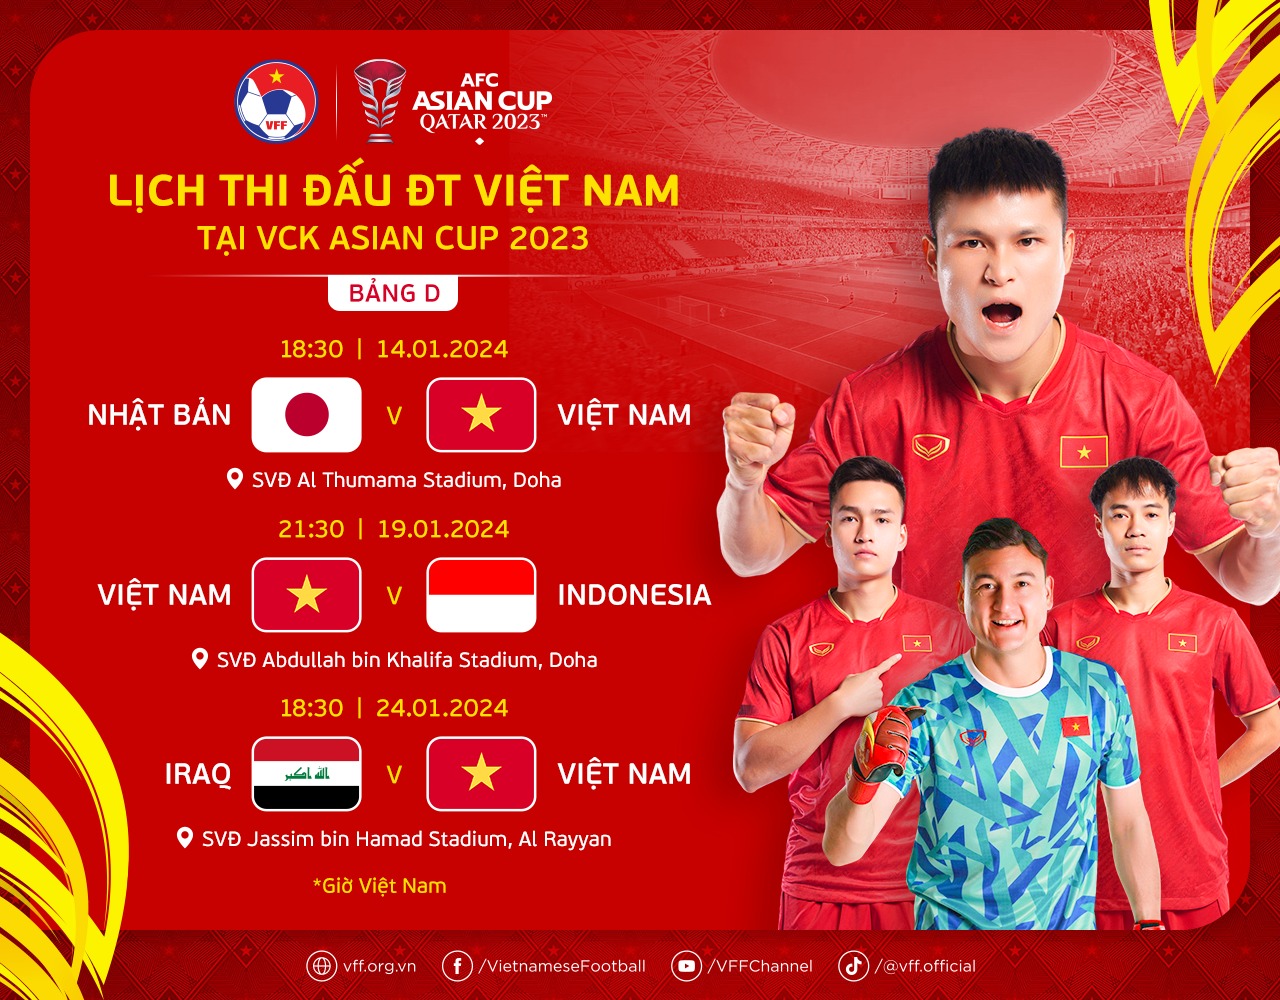 Lịch thi đấu của Đội tuyển Việt Nam tại Asian Cup 2023.